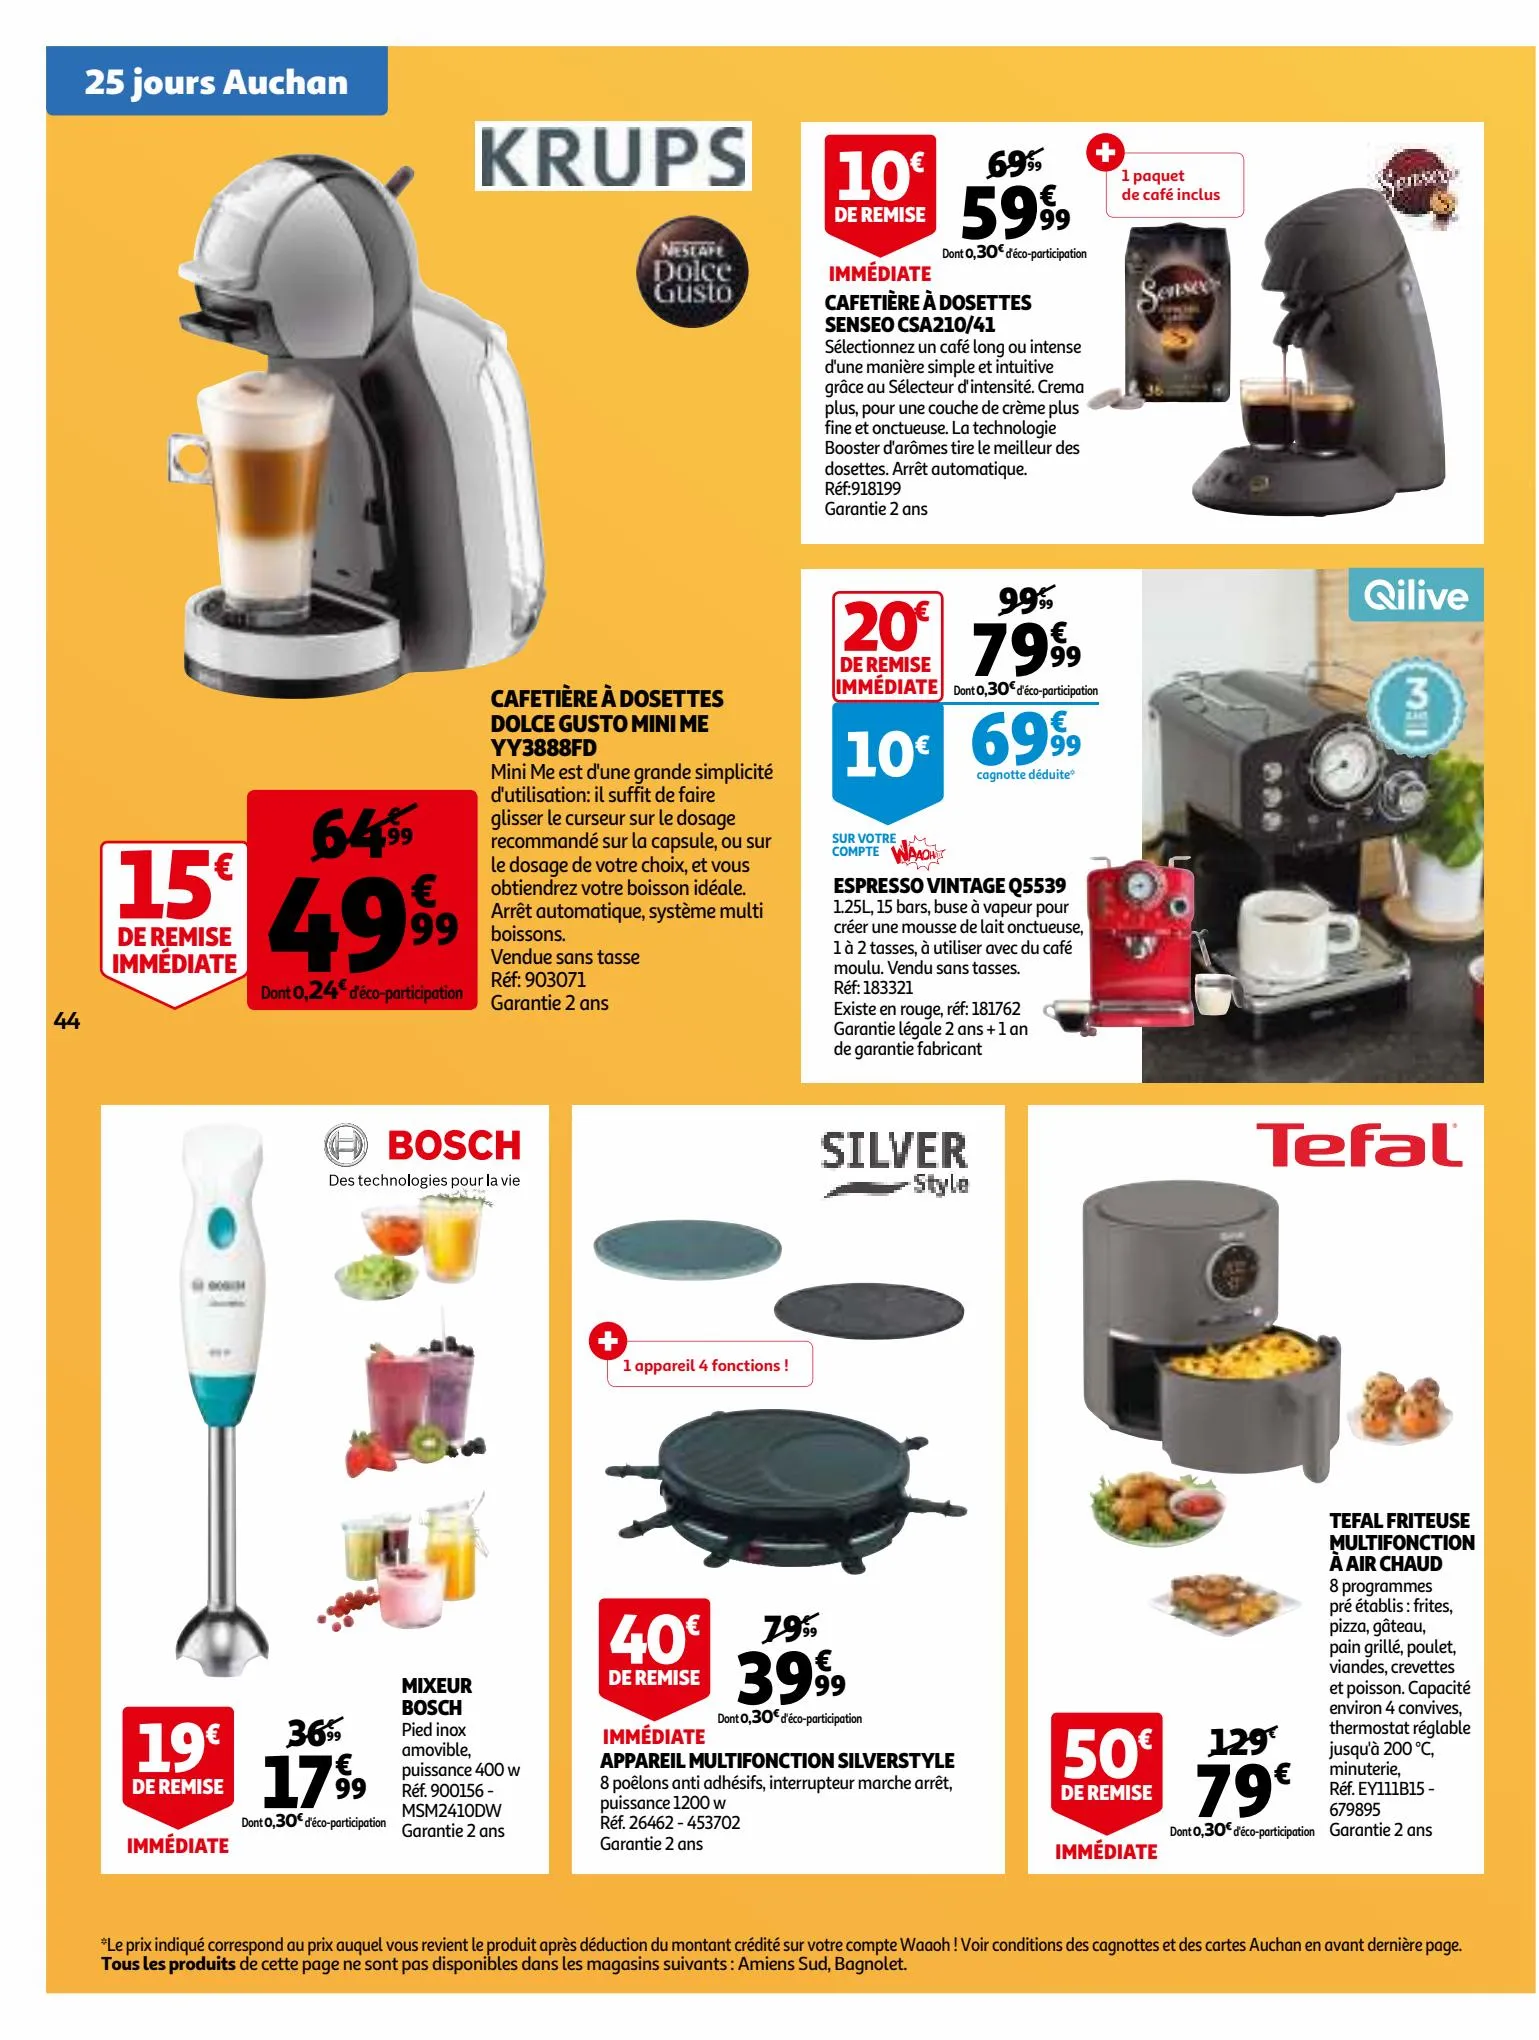 Catalogue 25 Jours Auchan, page 00044